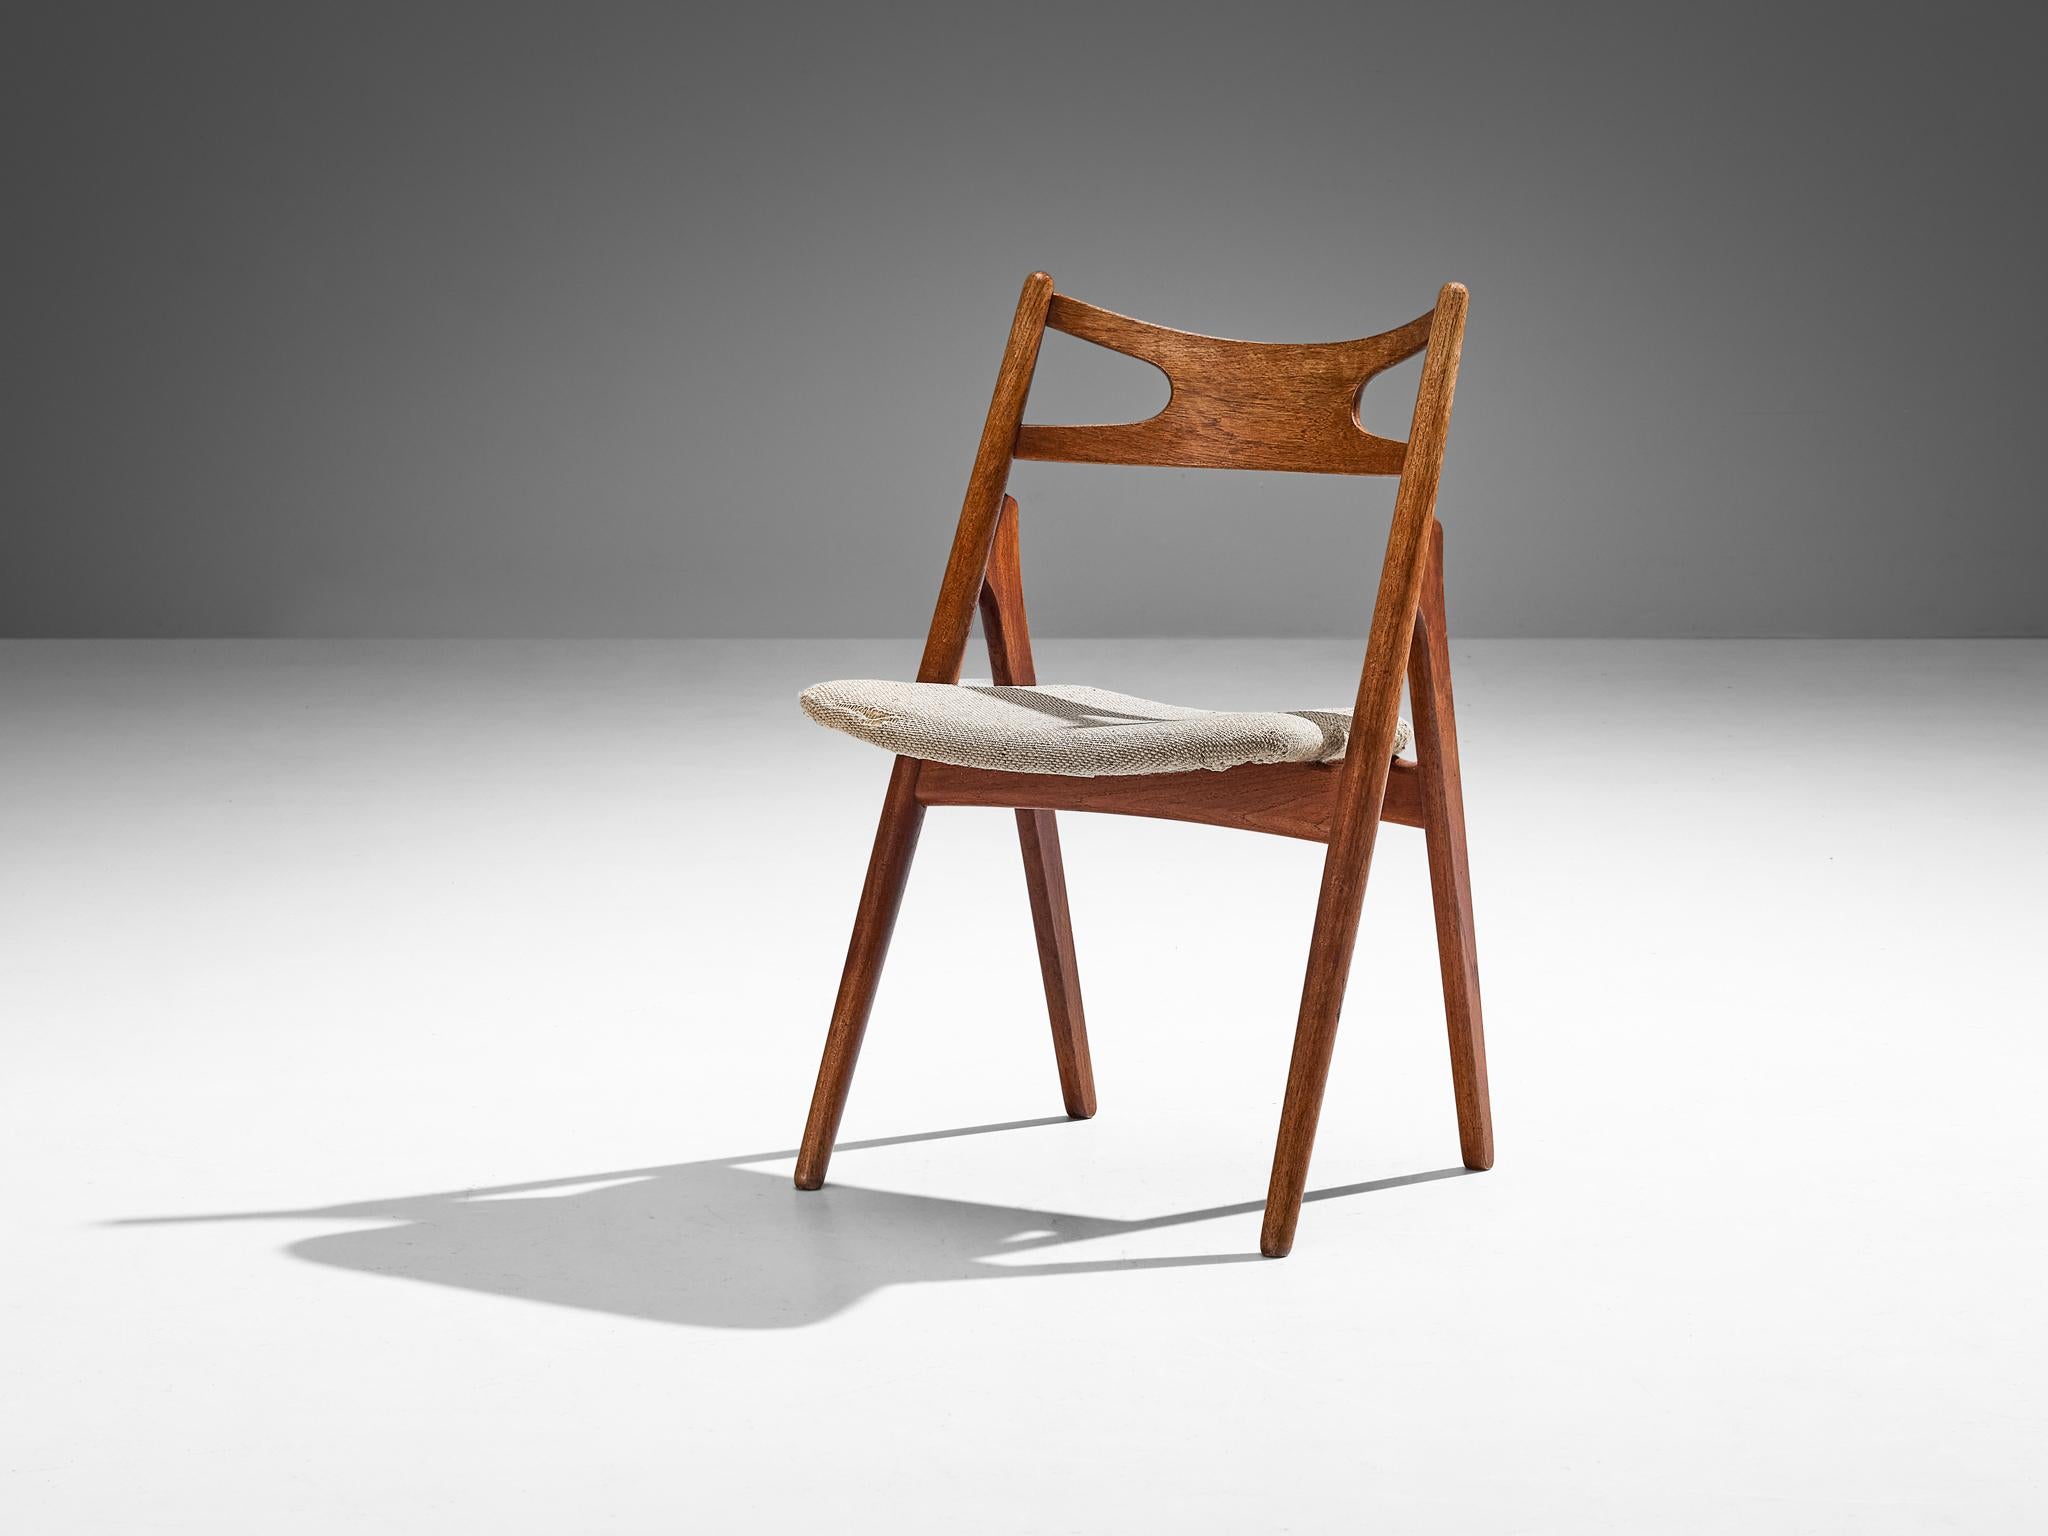 Hans J. Wegner pour Carl Hansen & Søn, chaise de salle à manger 'Sawbuck', modèle CH29, teck, tissu beige, Danemark, design 1952 

La chaise de Hans Wegner est un exemple de construction solide, malgré son apparence minimaliste. La particularité de